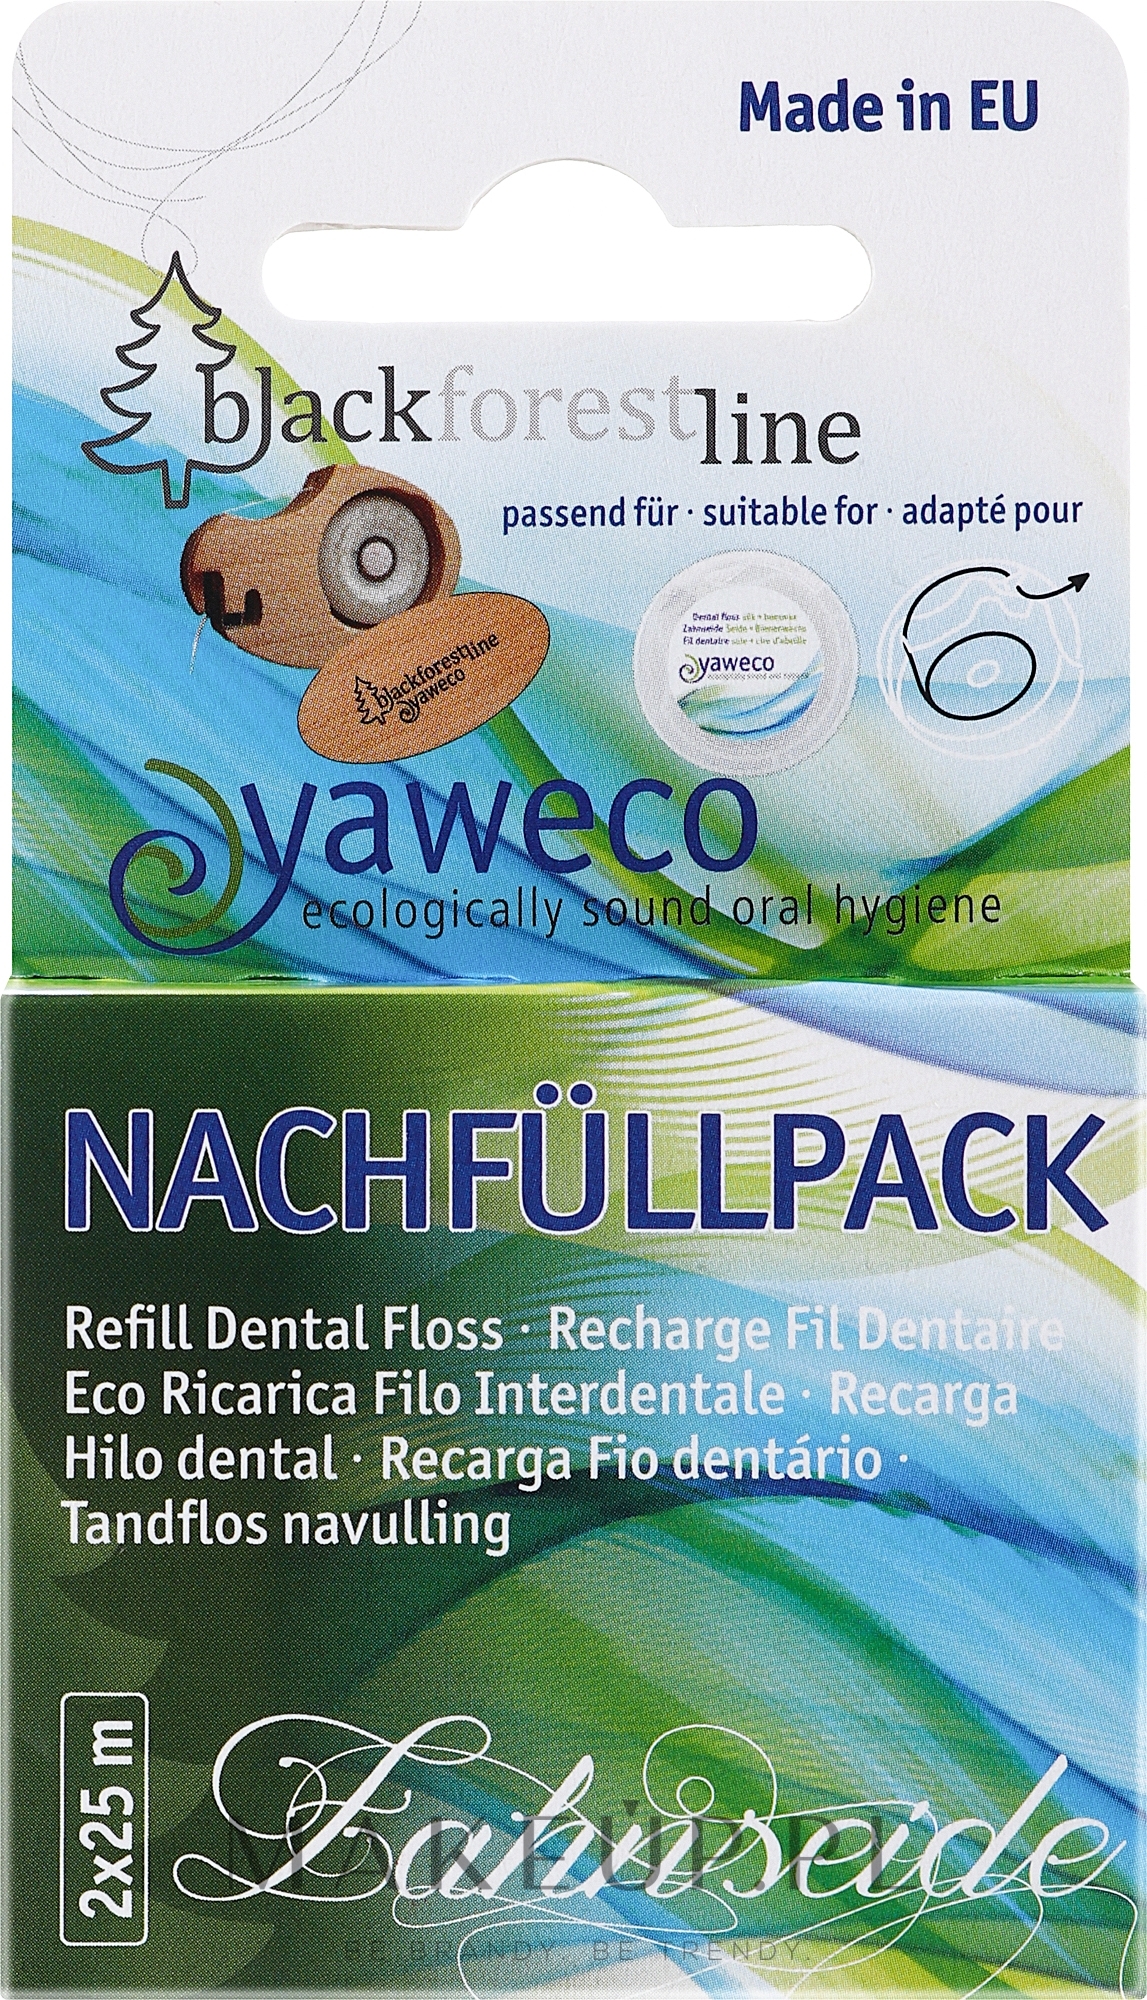 Naturalna nić dentystyczna 2 x 25 m - Yaweco — Zdjęcie 2 szt.